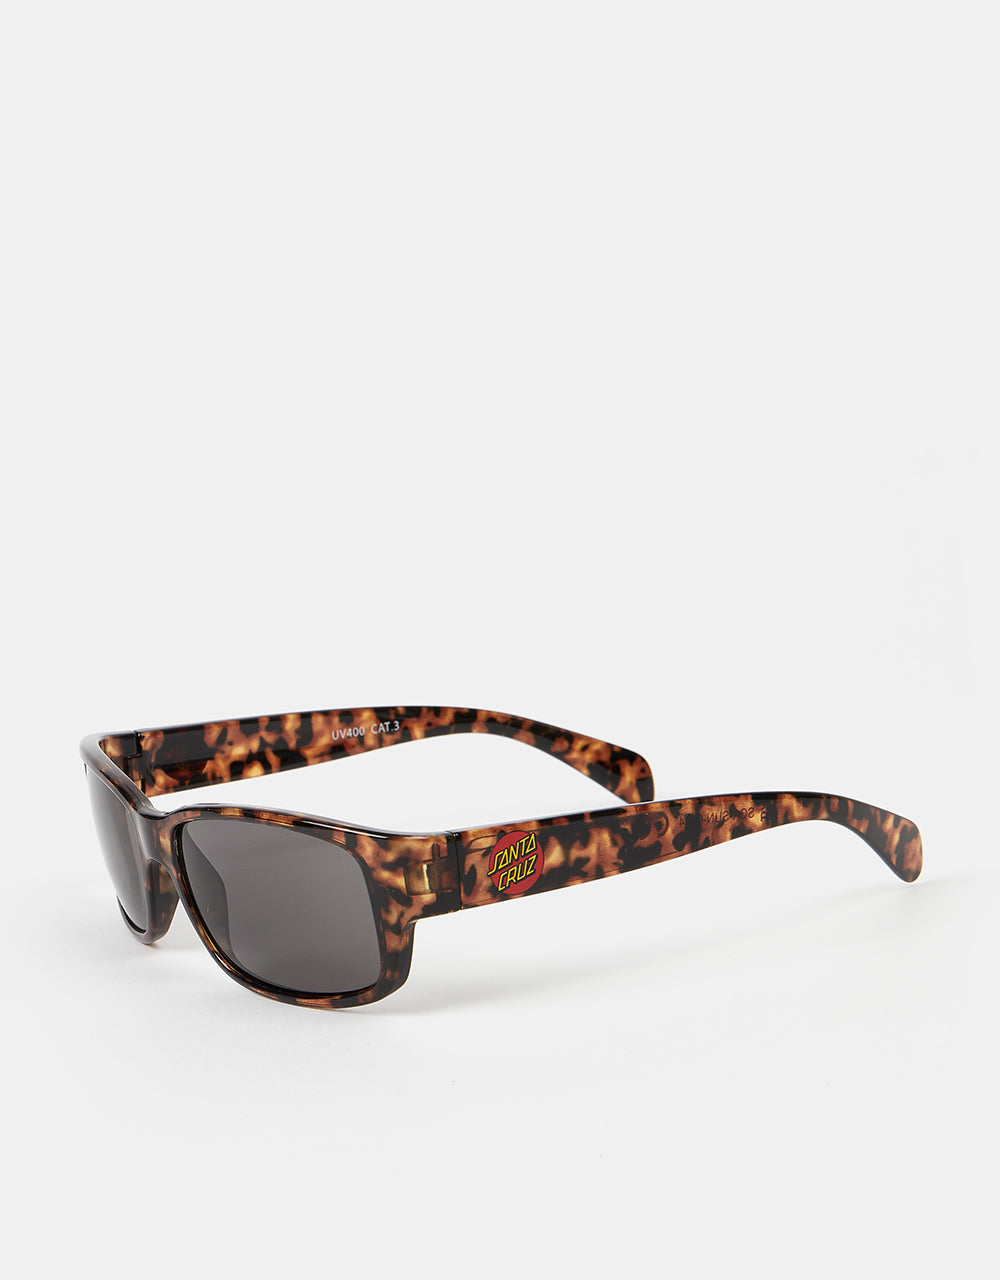 Santa Cruz Classic Dot Sunglasses  - Tortoiseshell